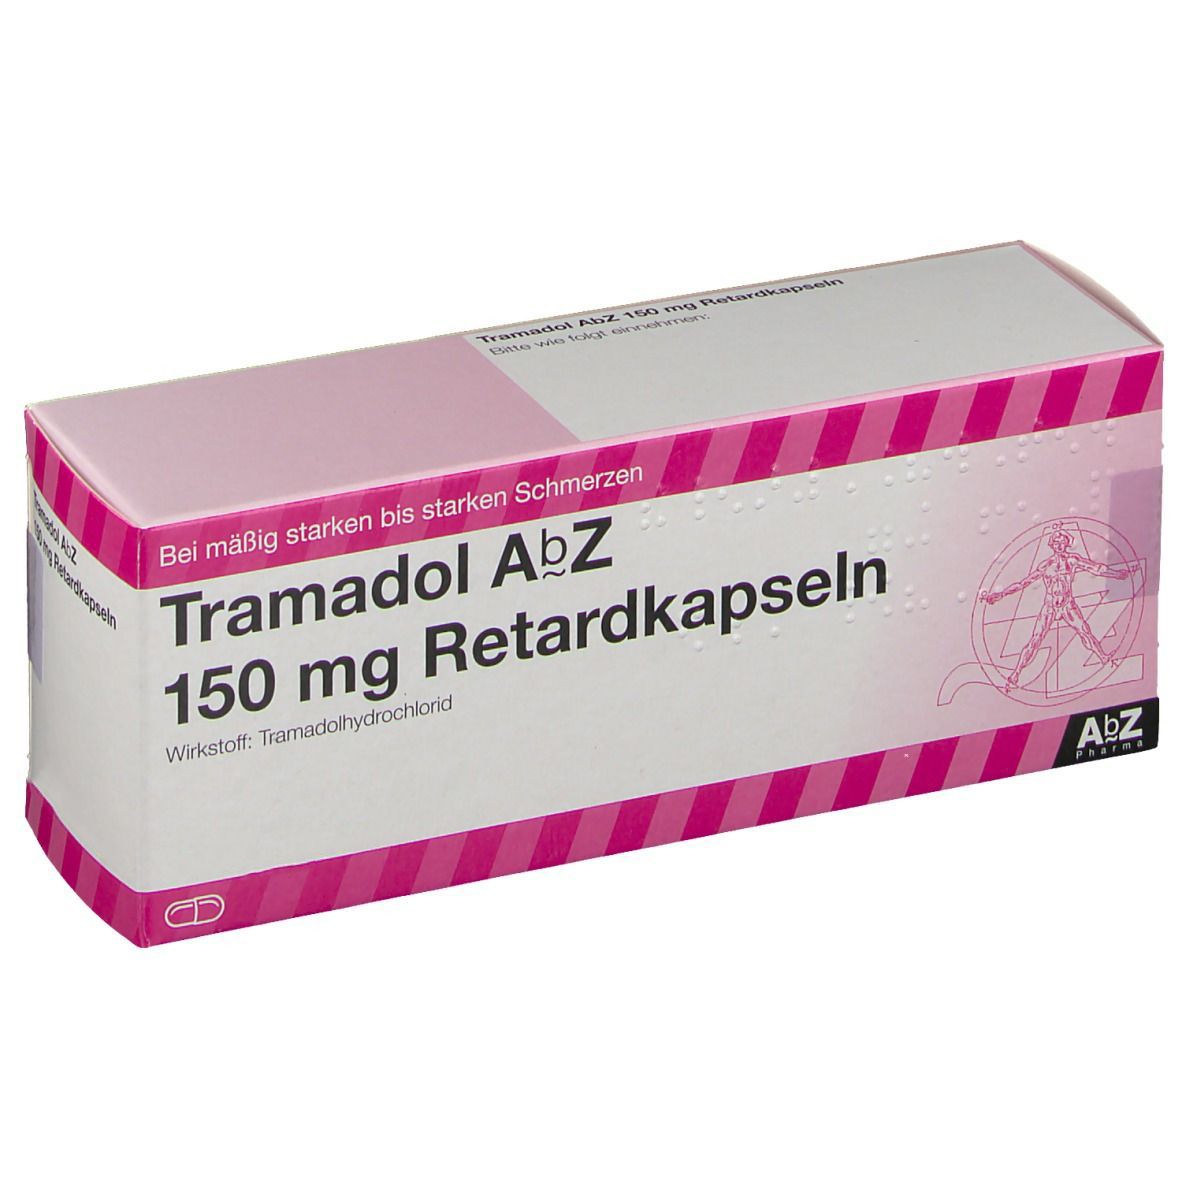 Tramadol AbZ 150 mg